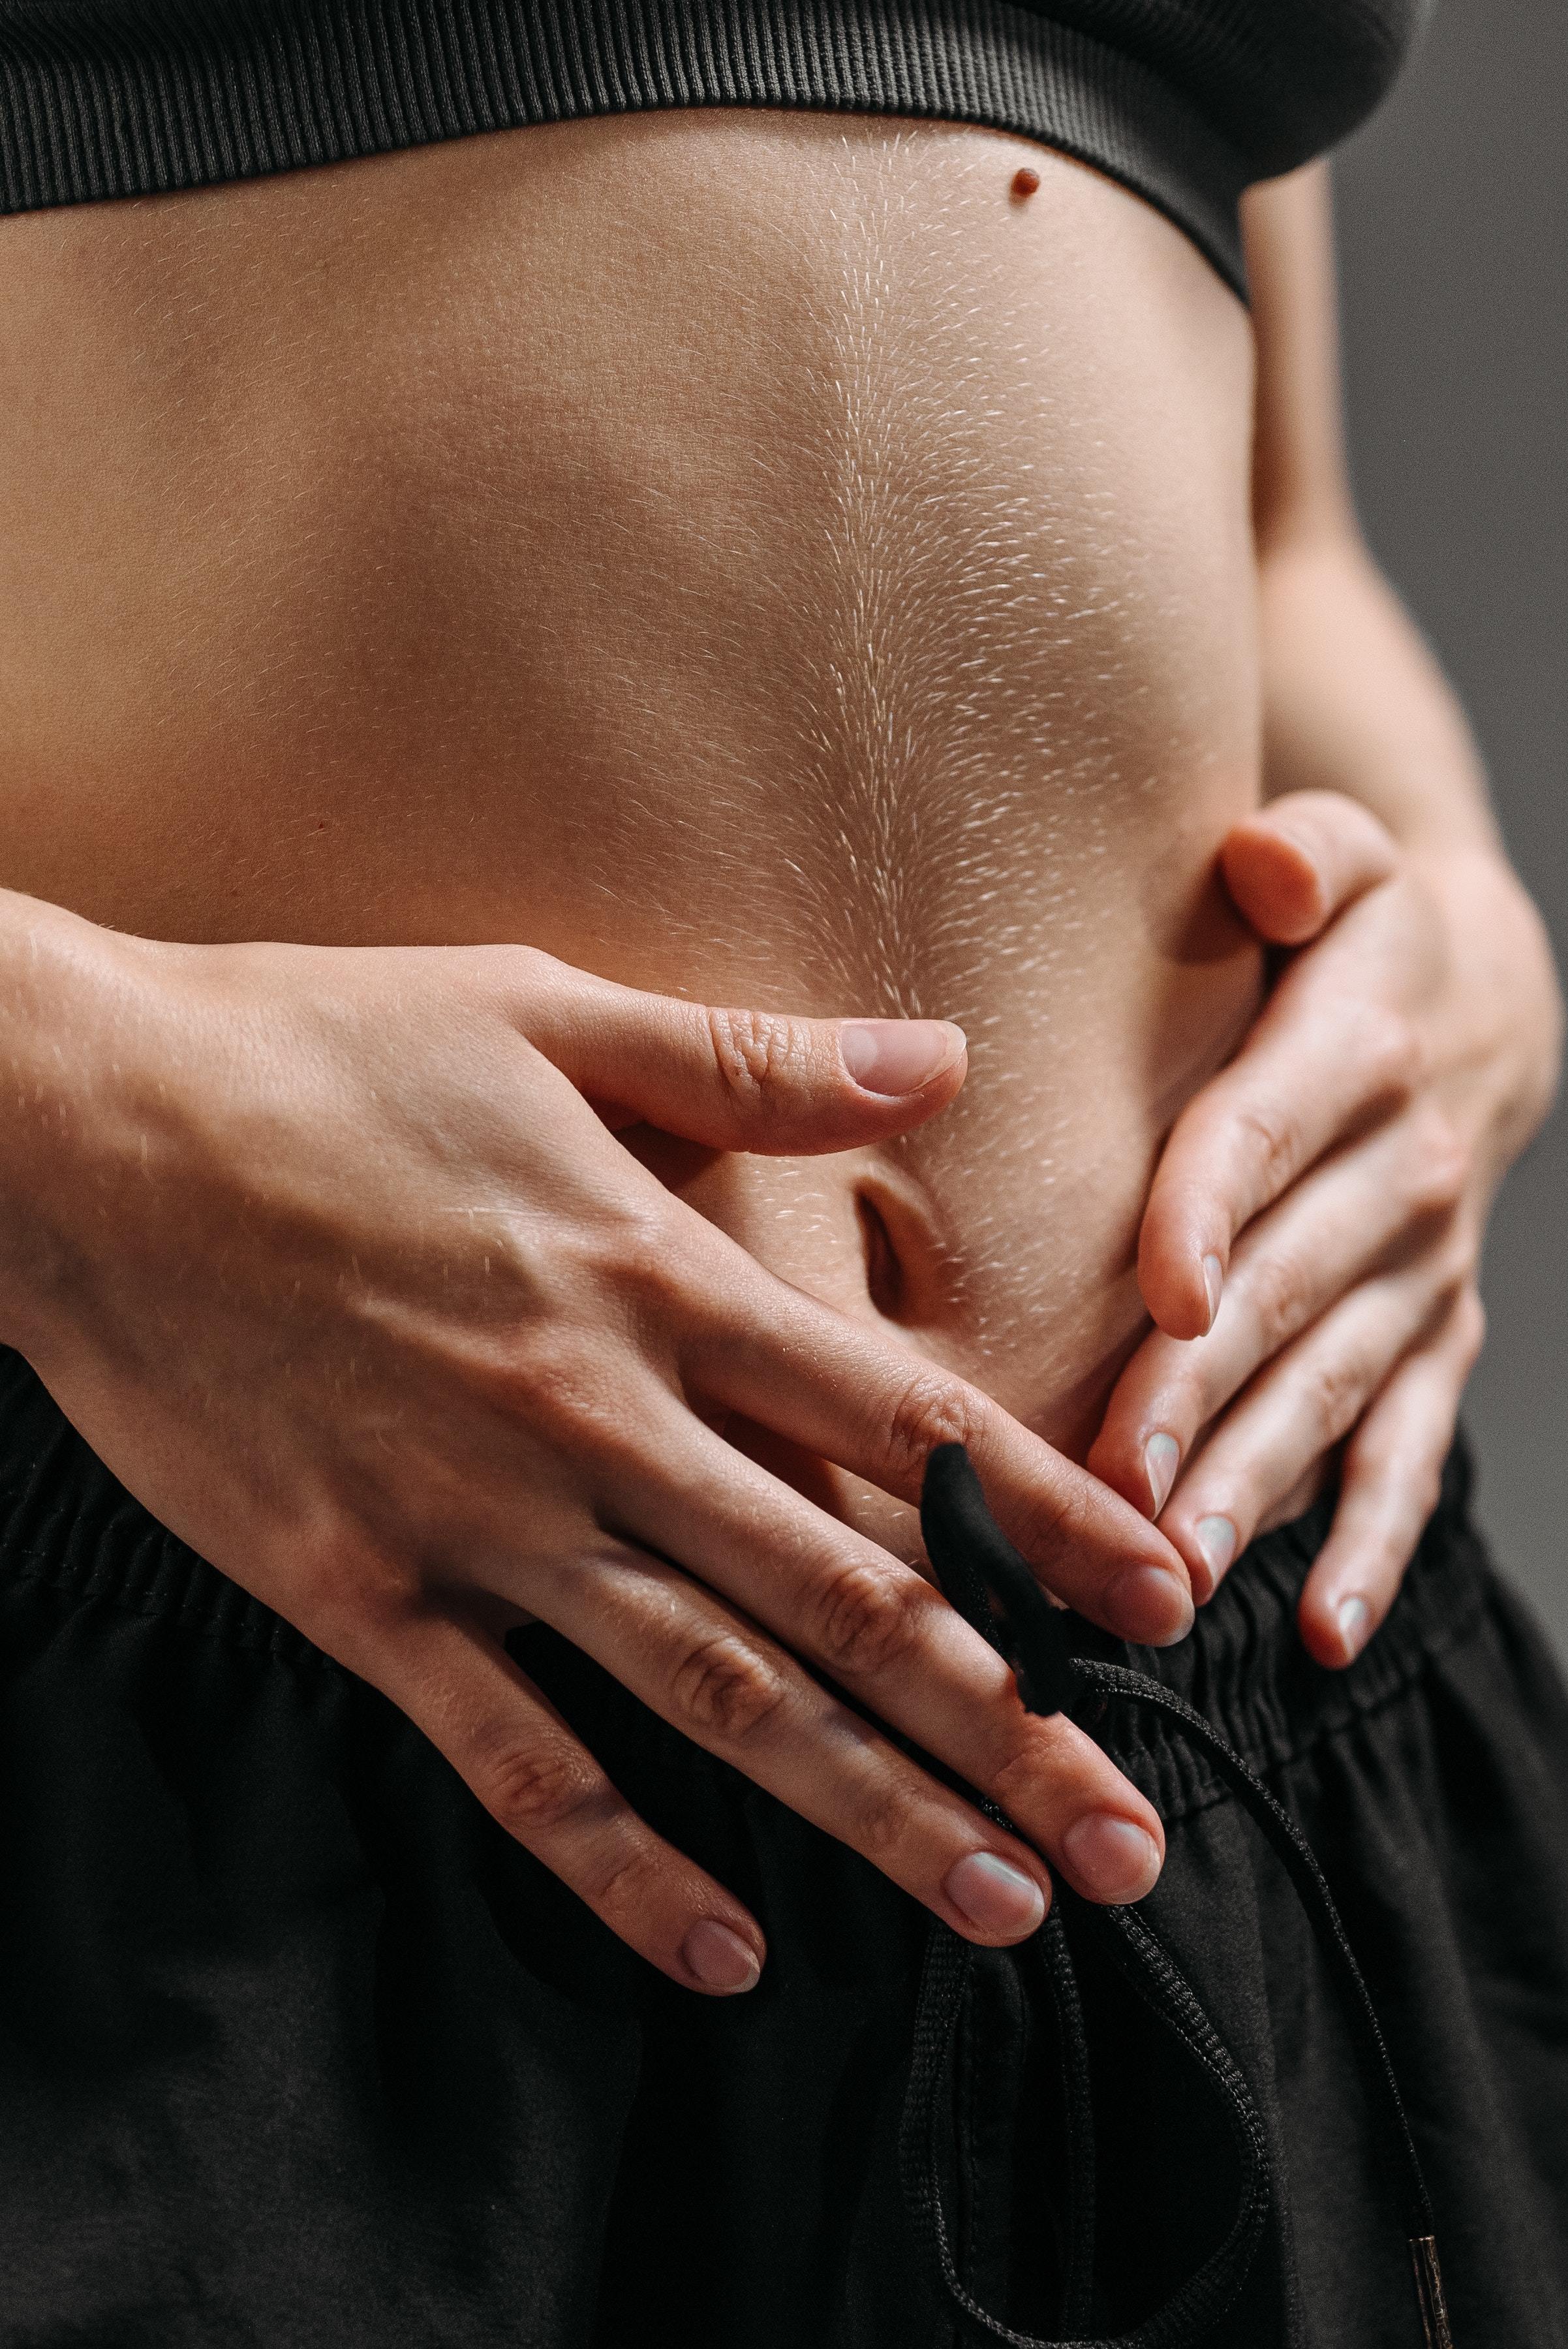 Una mujer toca con sus manos el vientre en señar de dolor de estómago producido por gases.